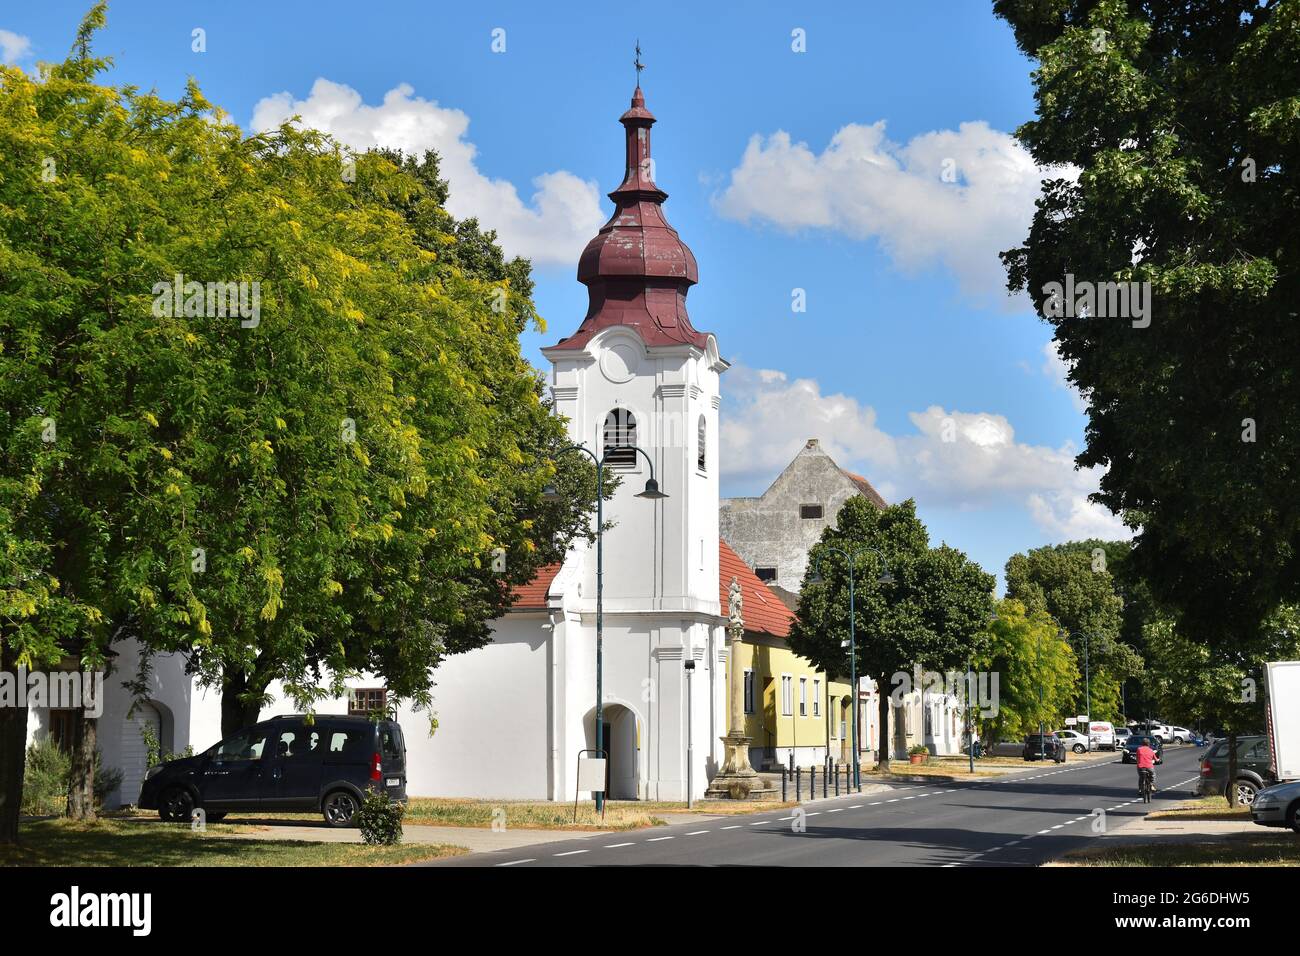 Das Dorf Zurndorf, Burgenland, Österreich. Dorfstraße und katholische Kirche Stock Photo